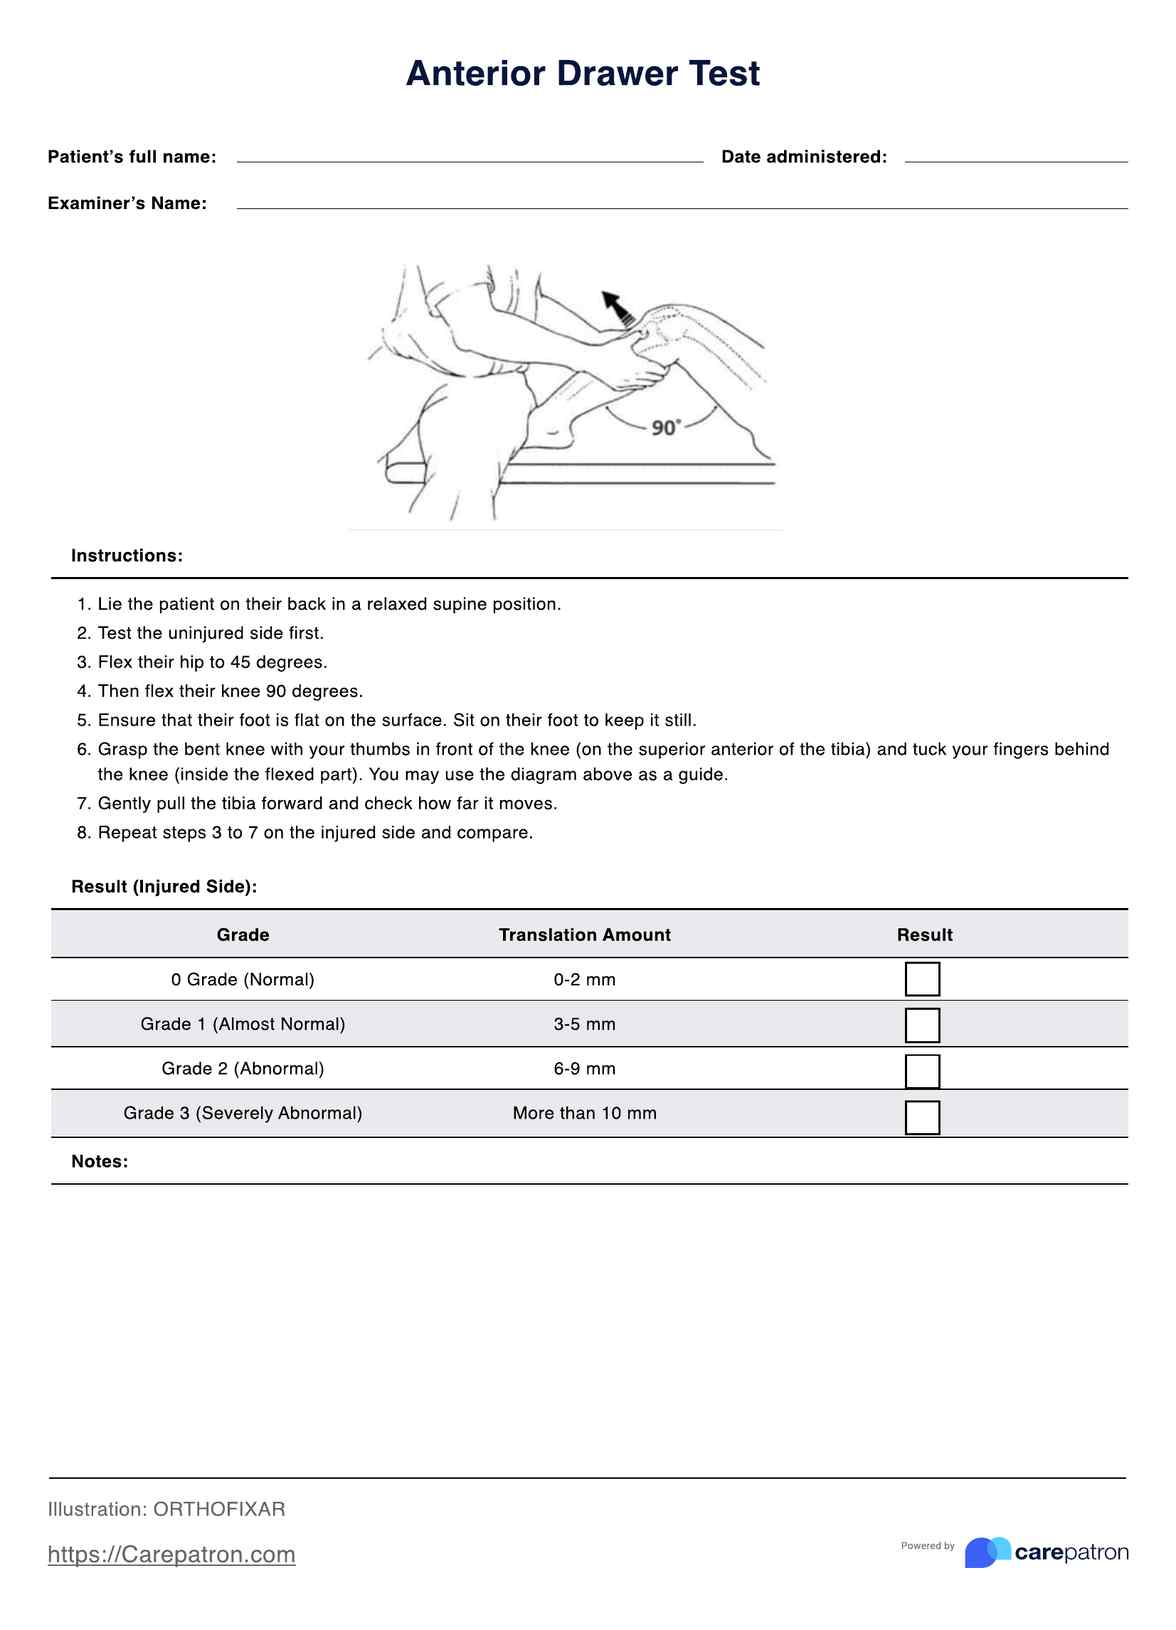 Anterior Drawer Tests PDF Example